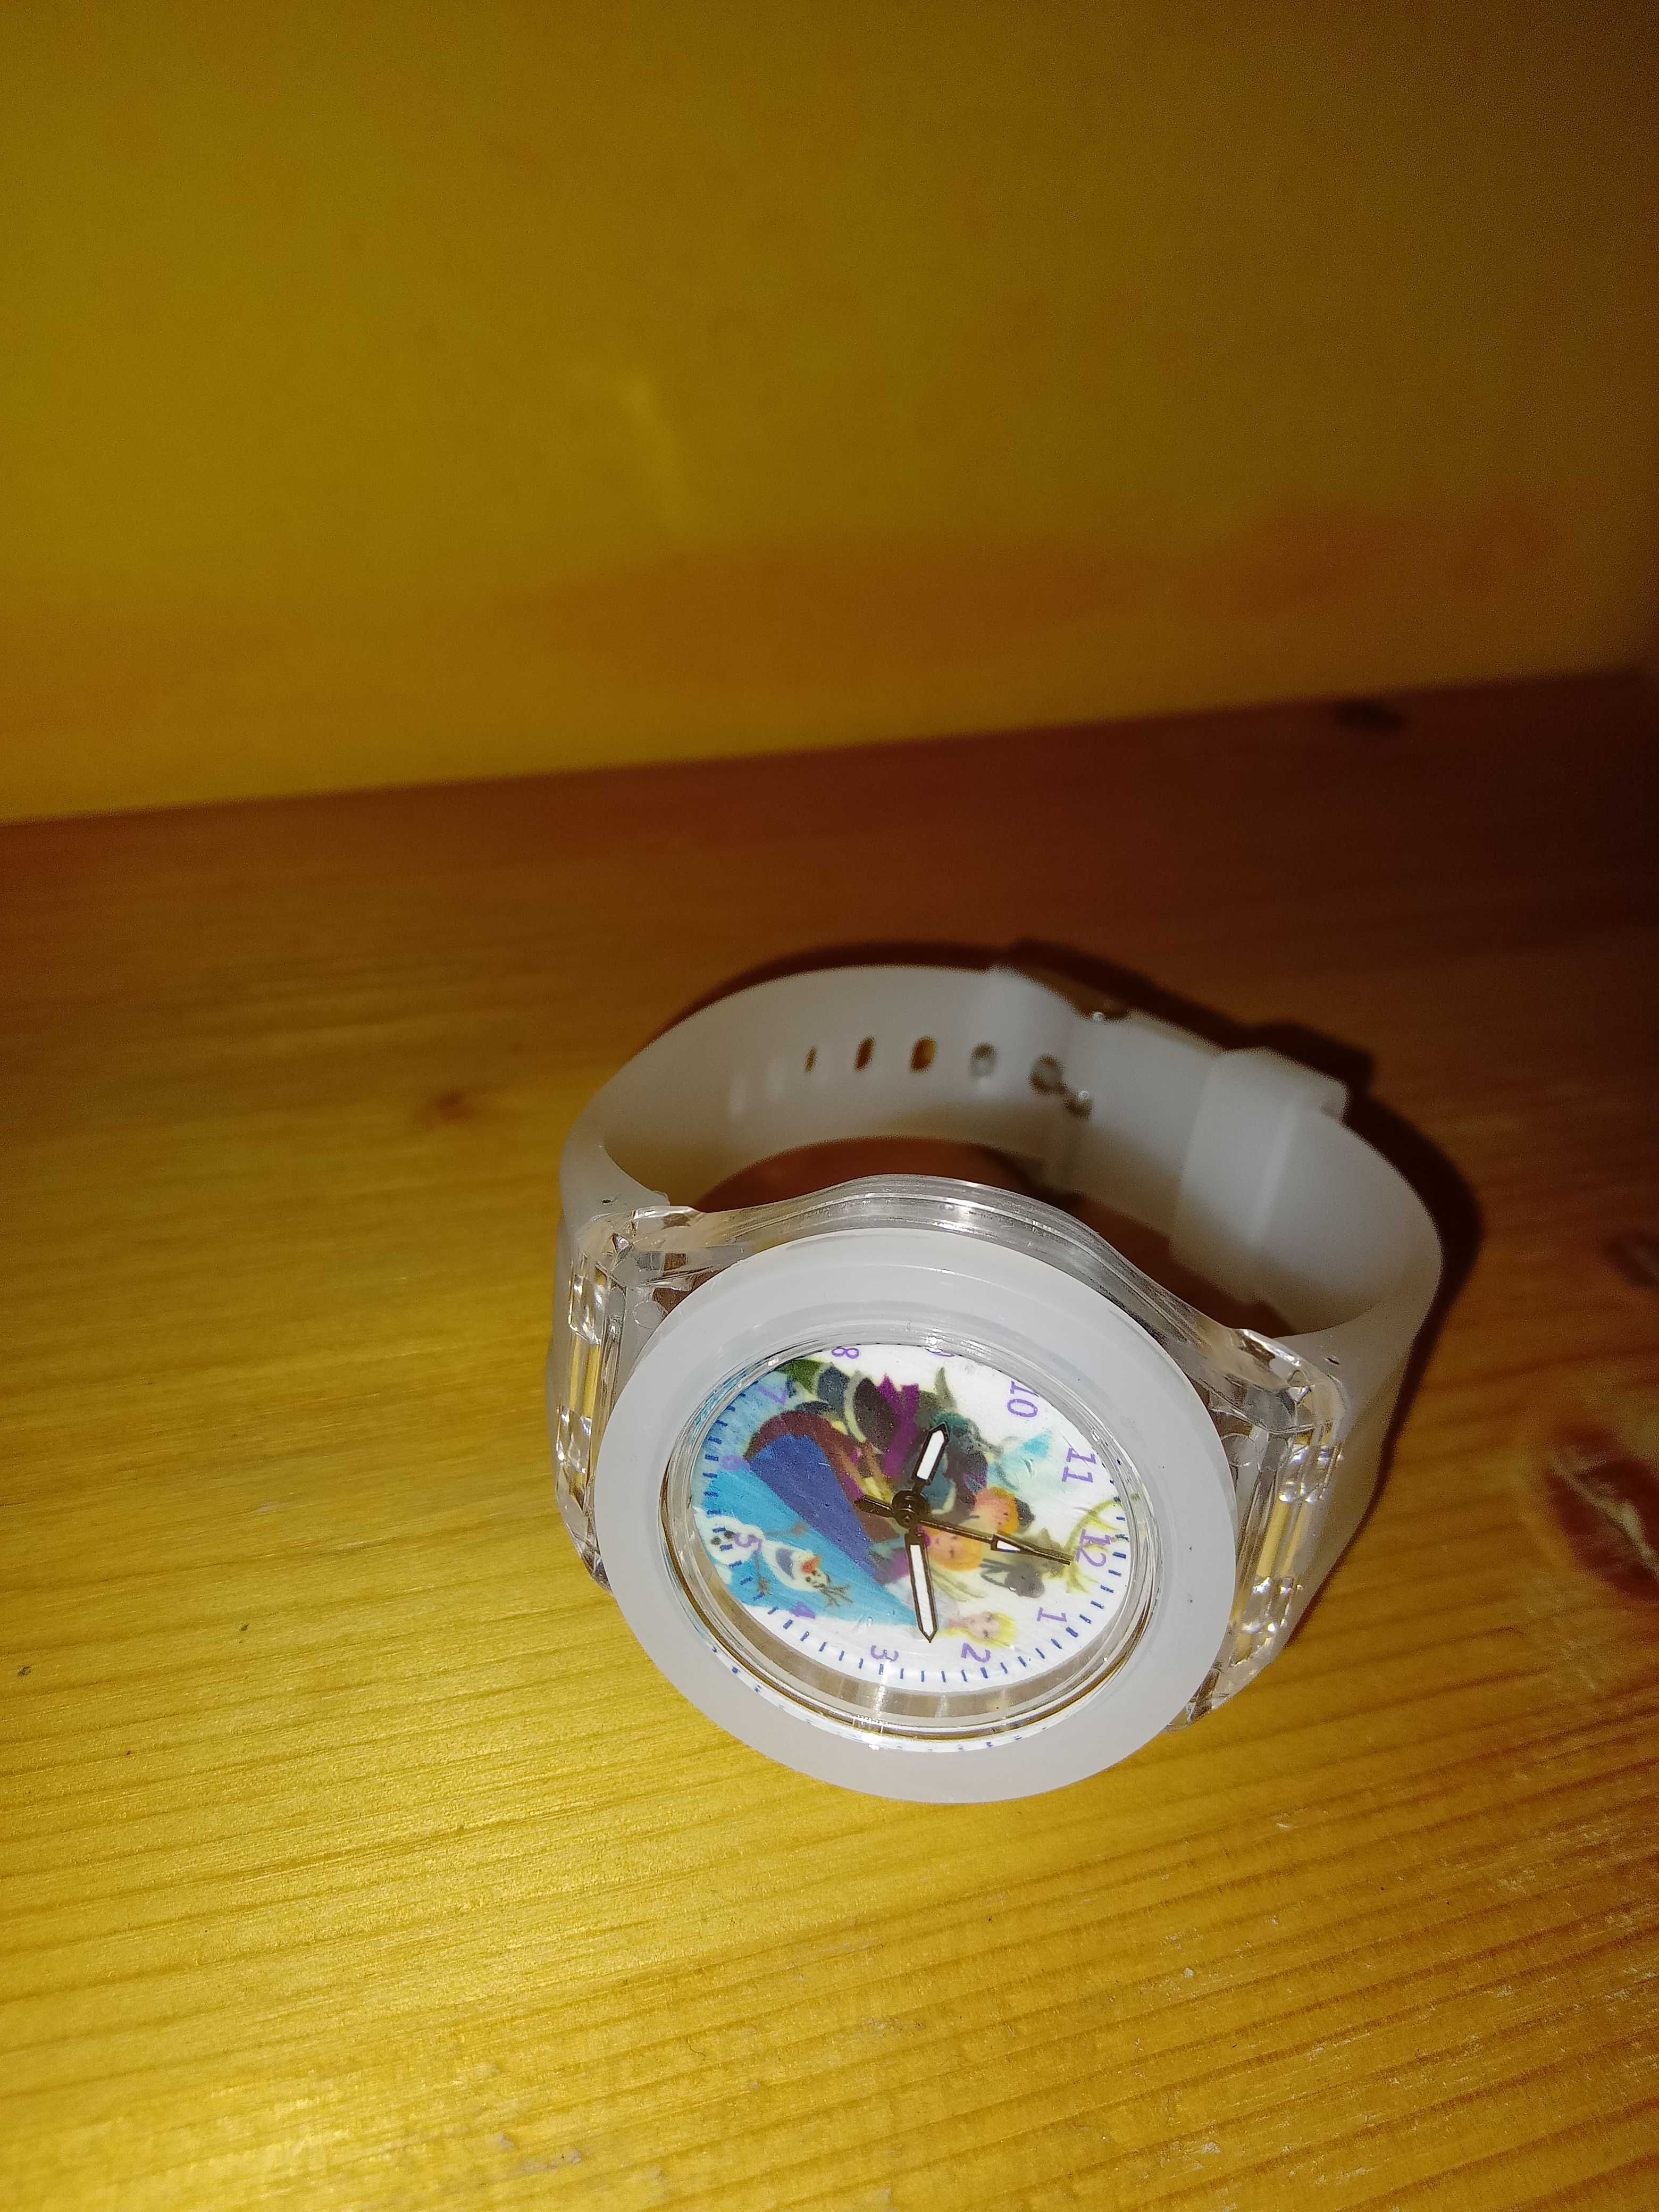 Zegarek Disney, księżniczka, nowy, świecący, 2 kolory.